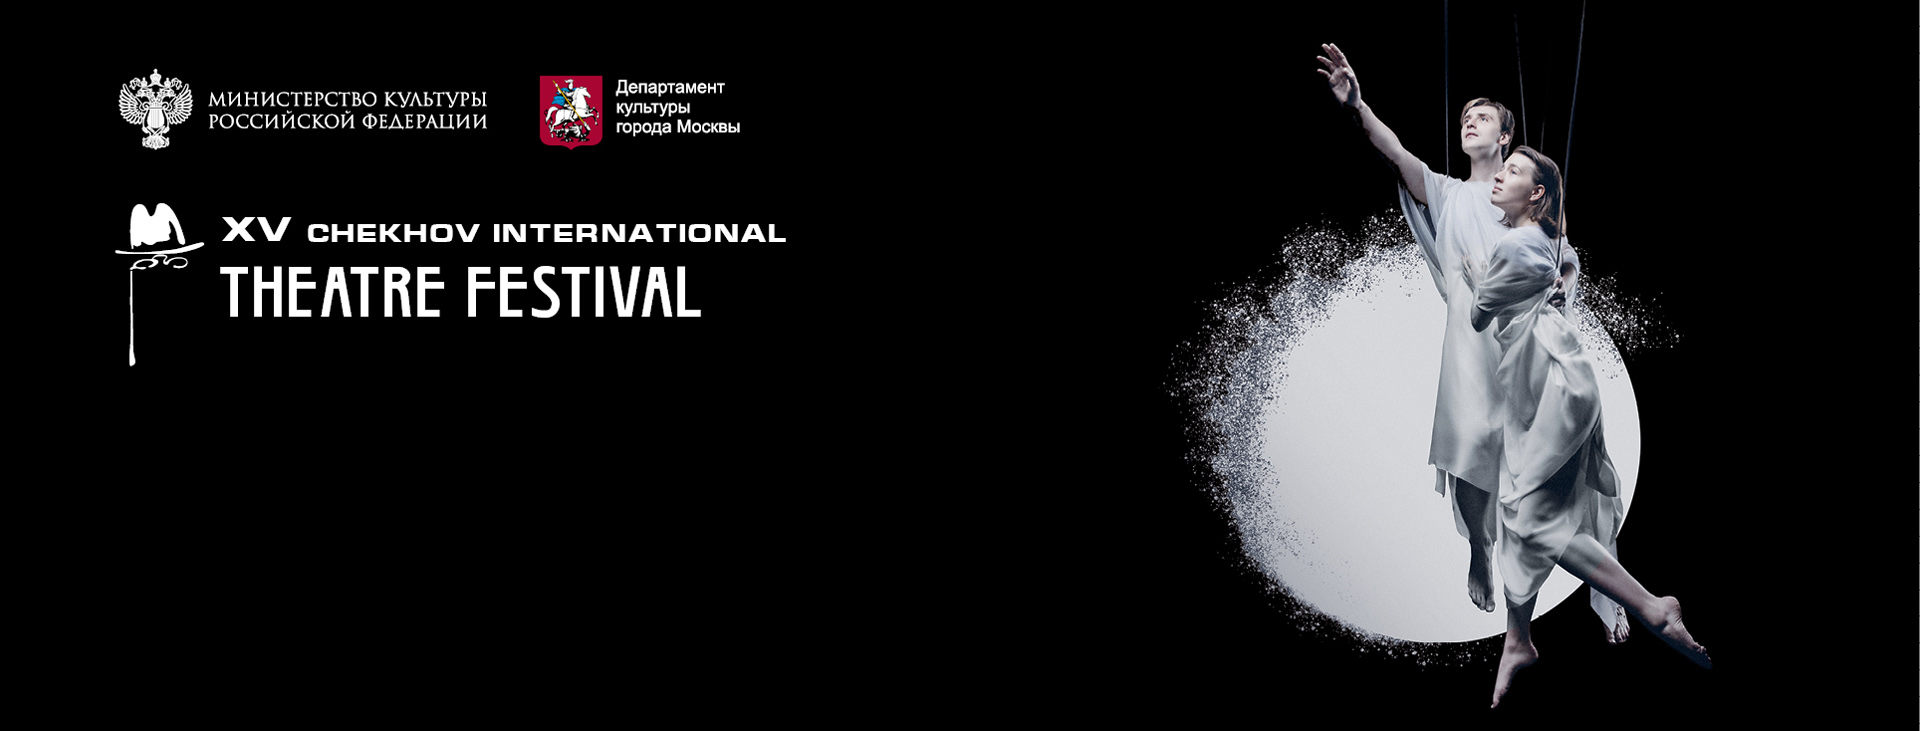 International Theater Festival. A.P. Chekhov (Chekhov Festival)